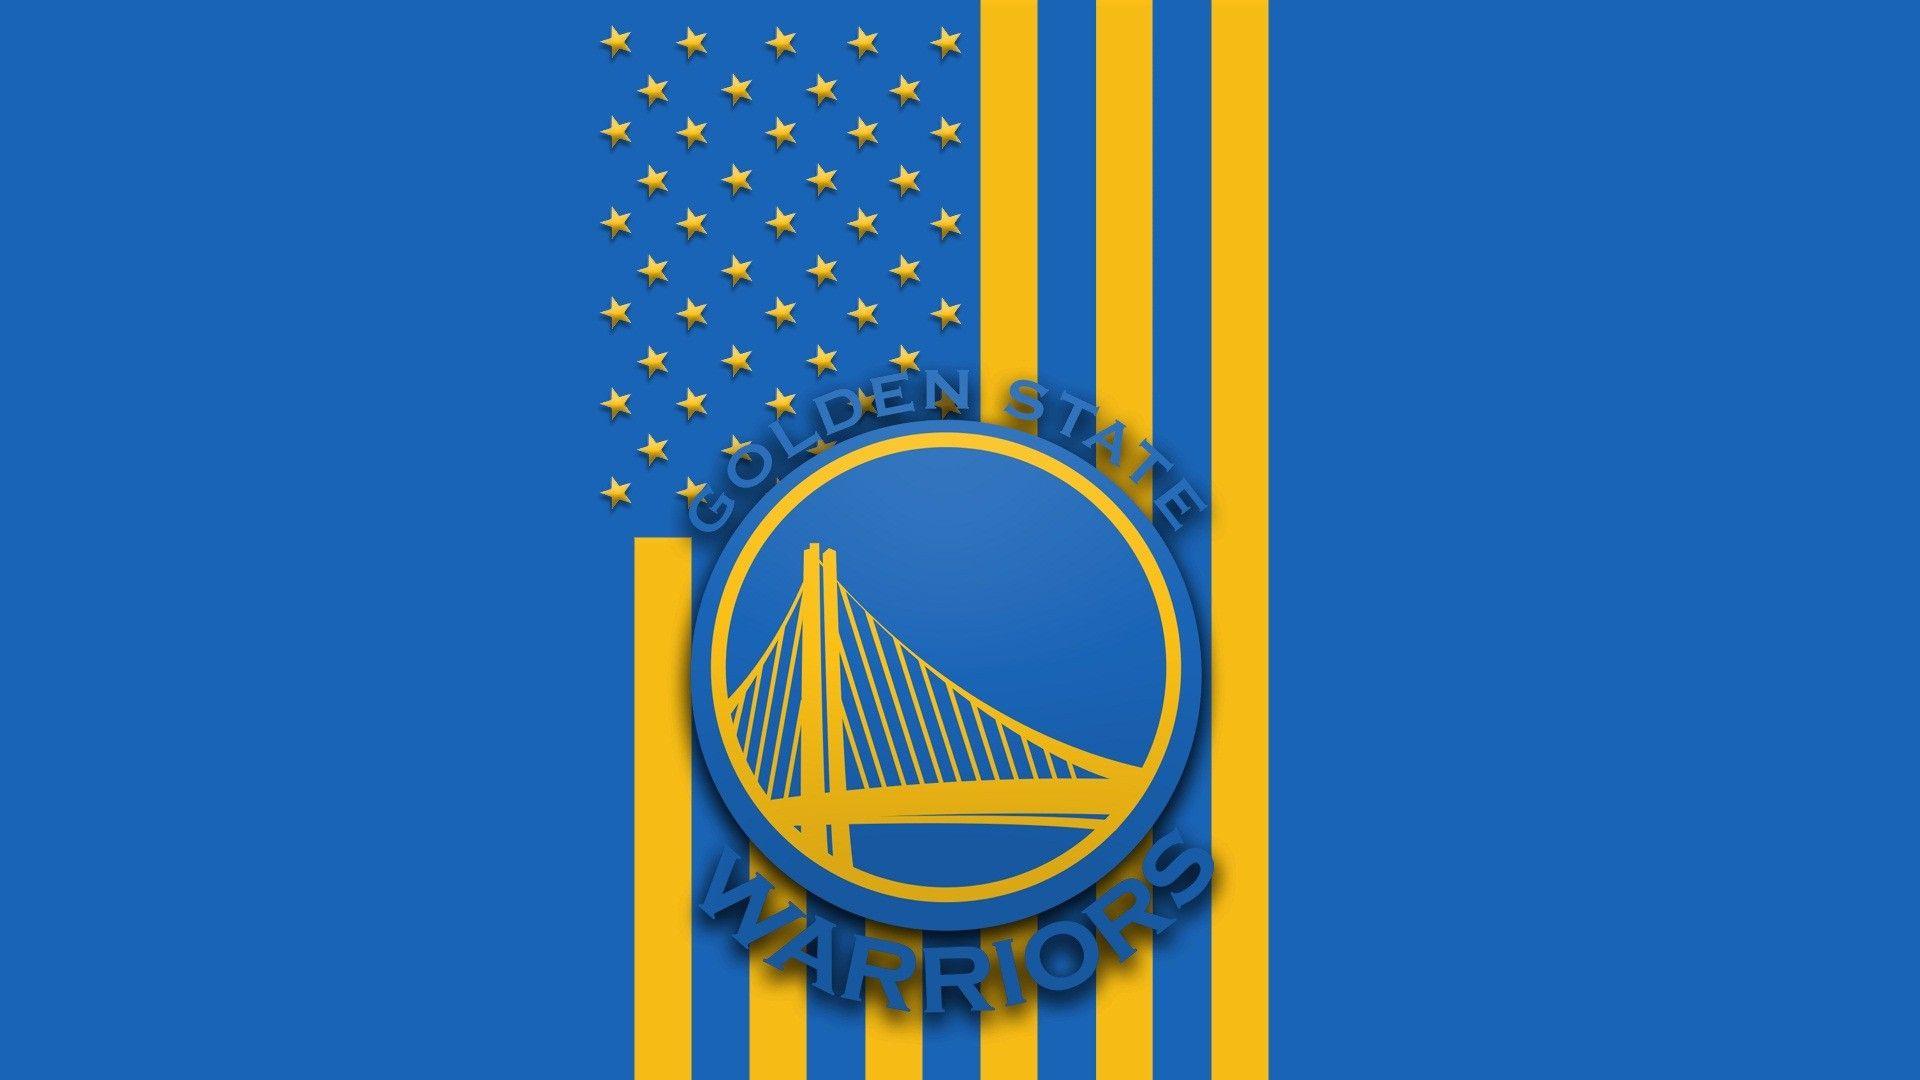 Golden State Warriors Logo Wallpaper 6880879